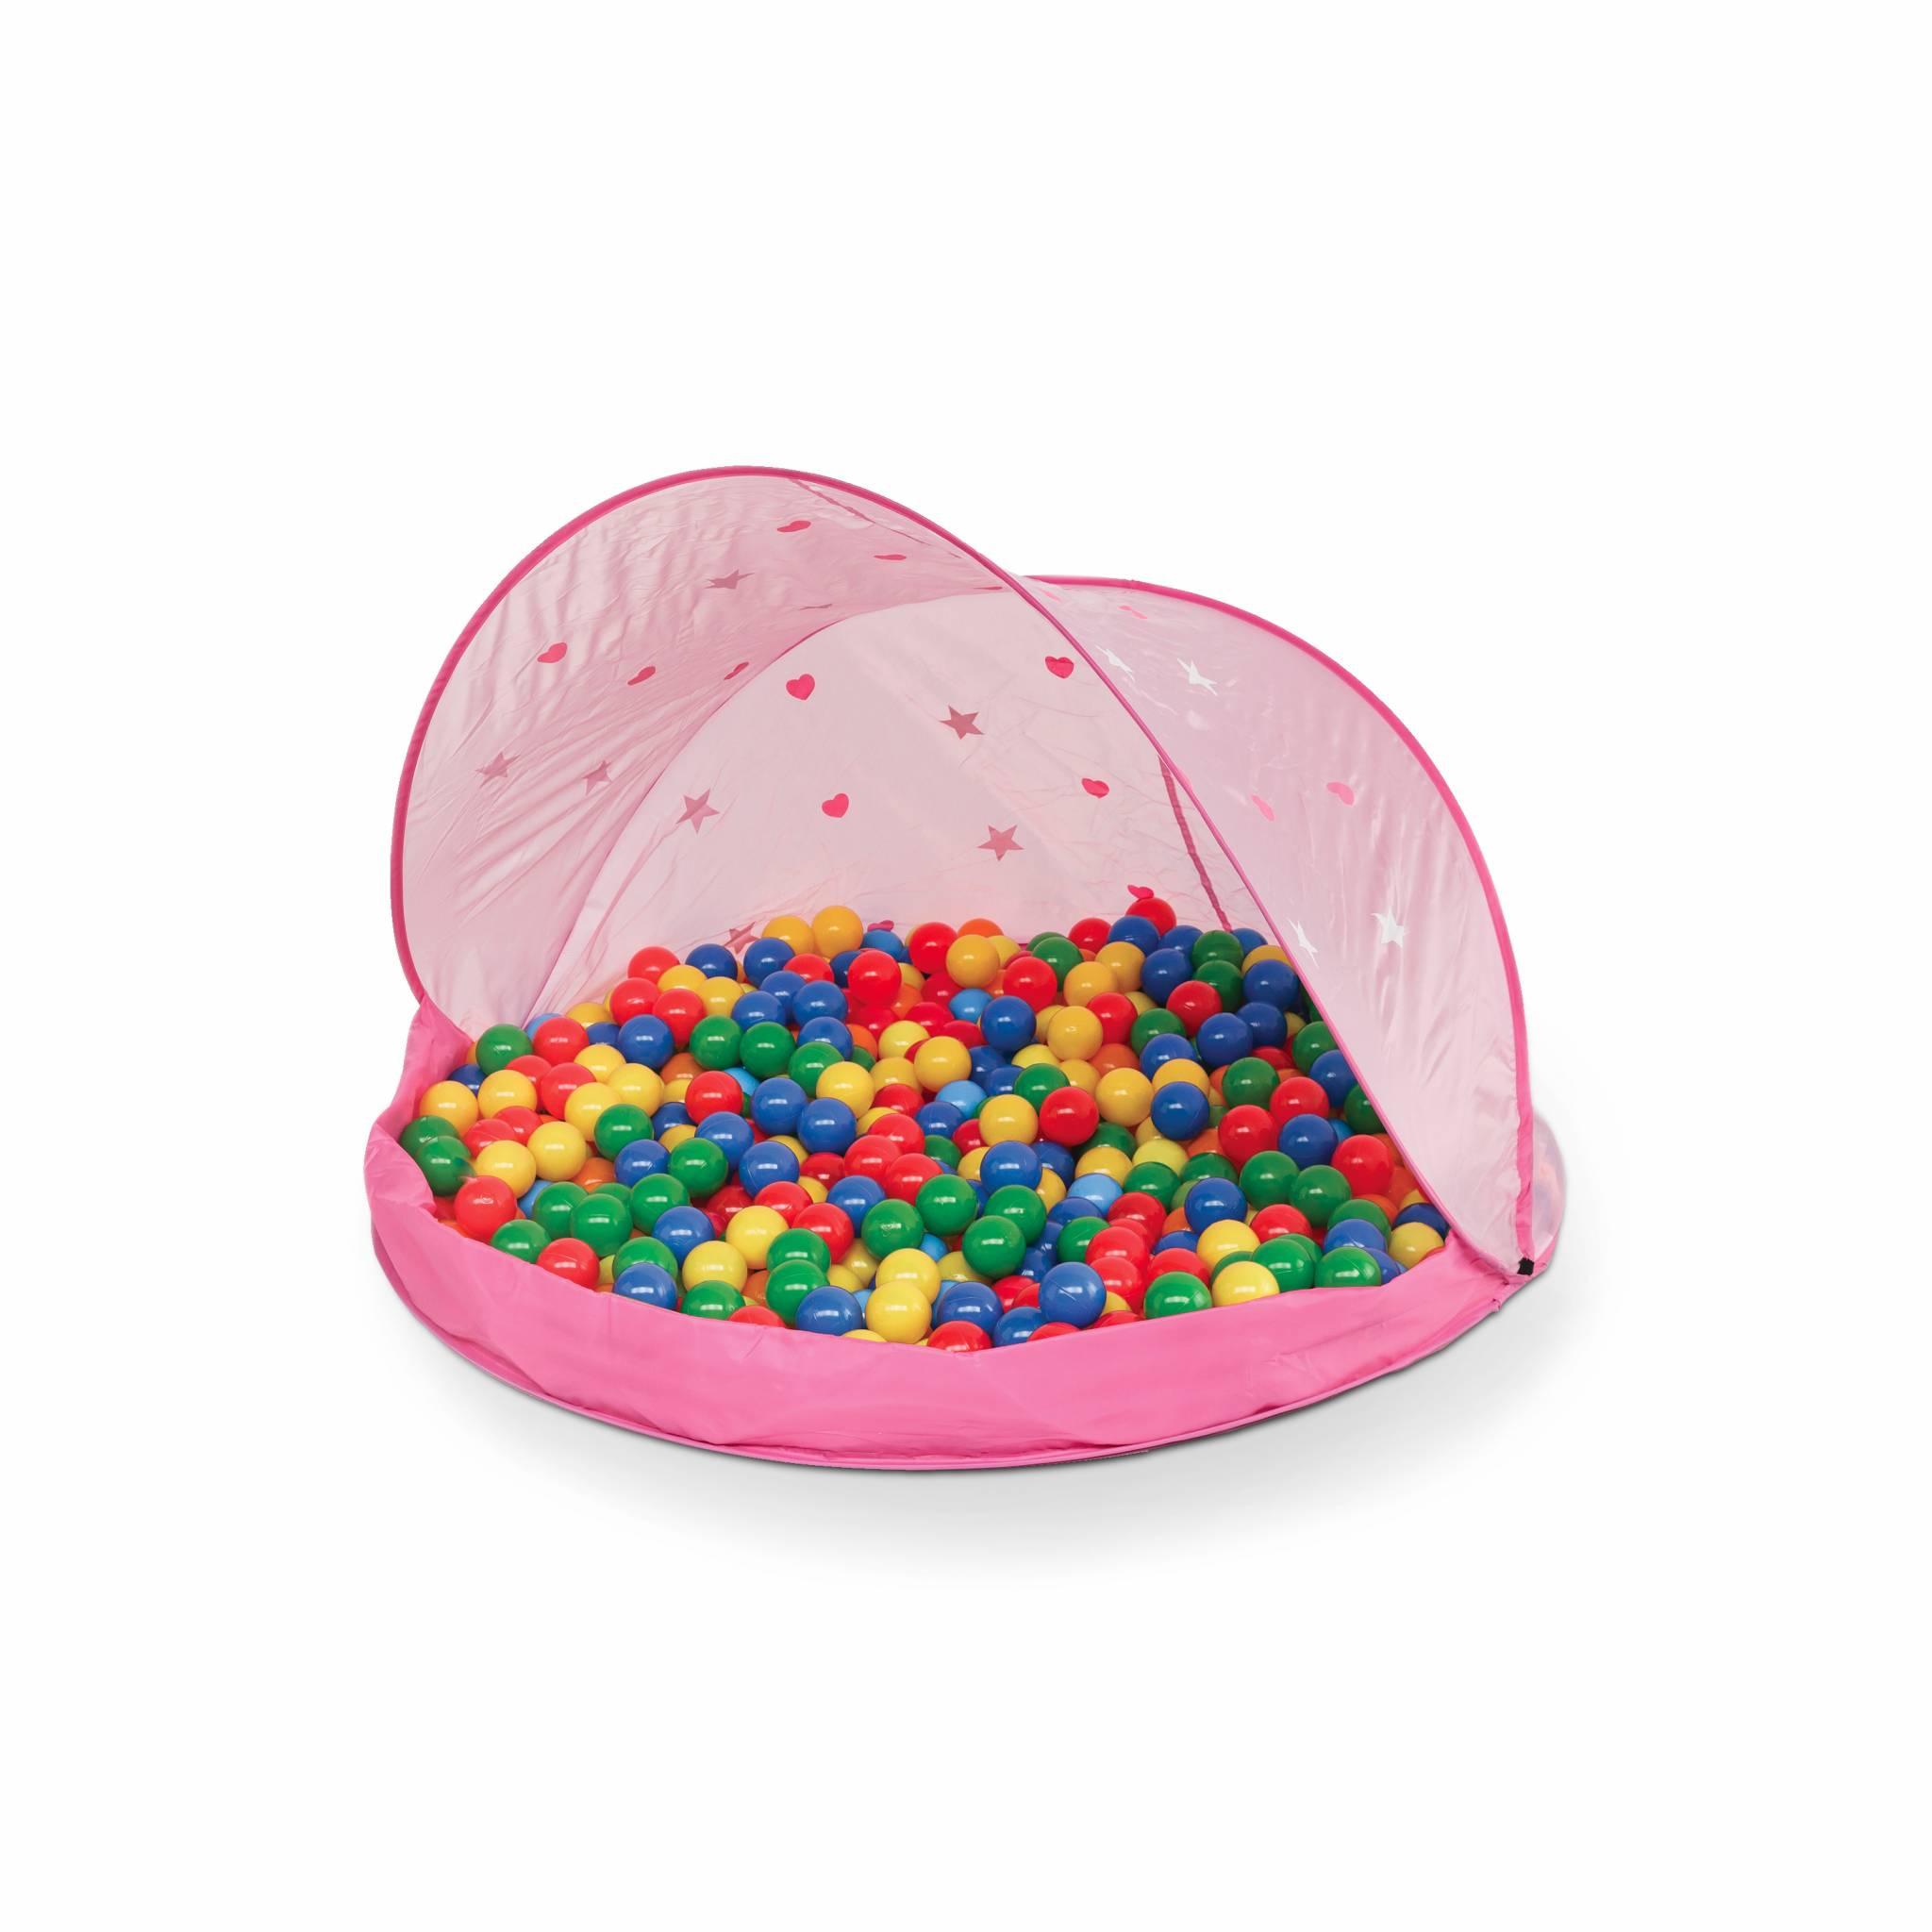 Roze pop-up speeltent voor kinderen – Paulette, met 50 ballen